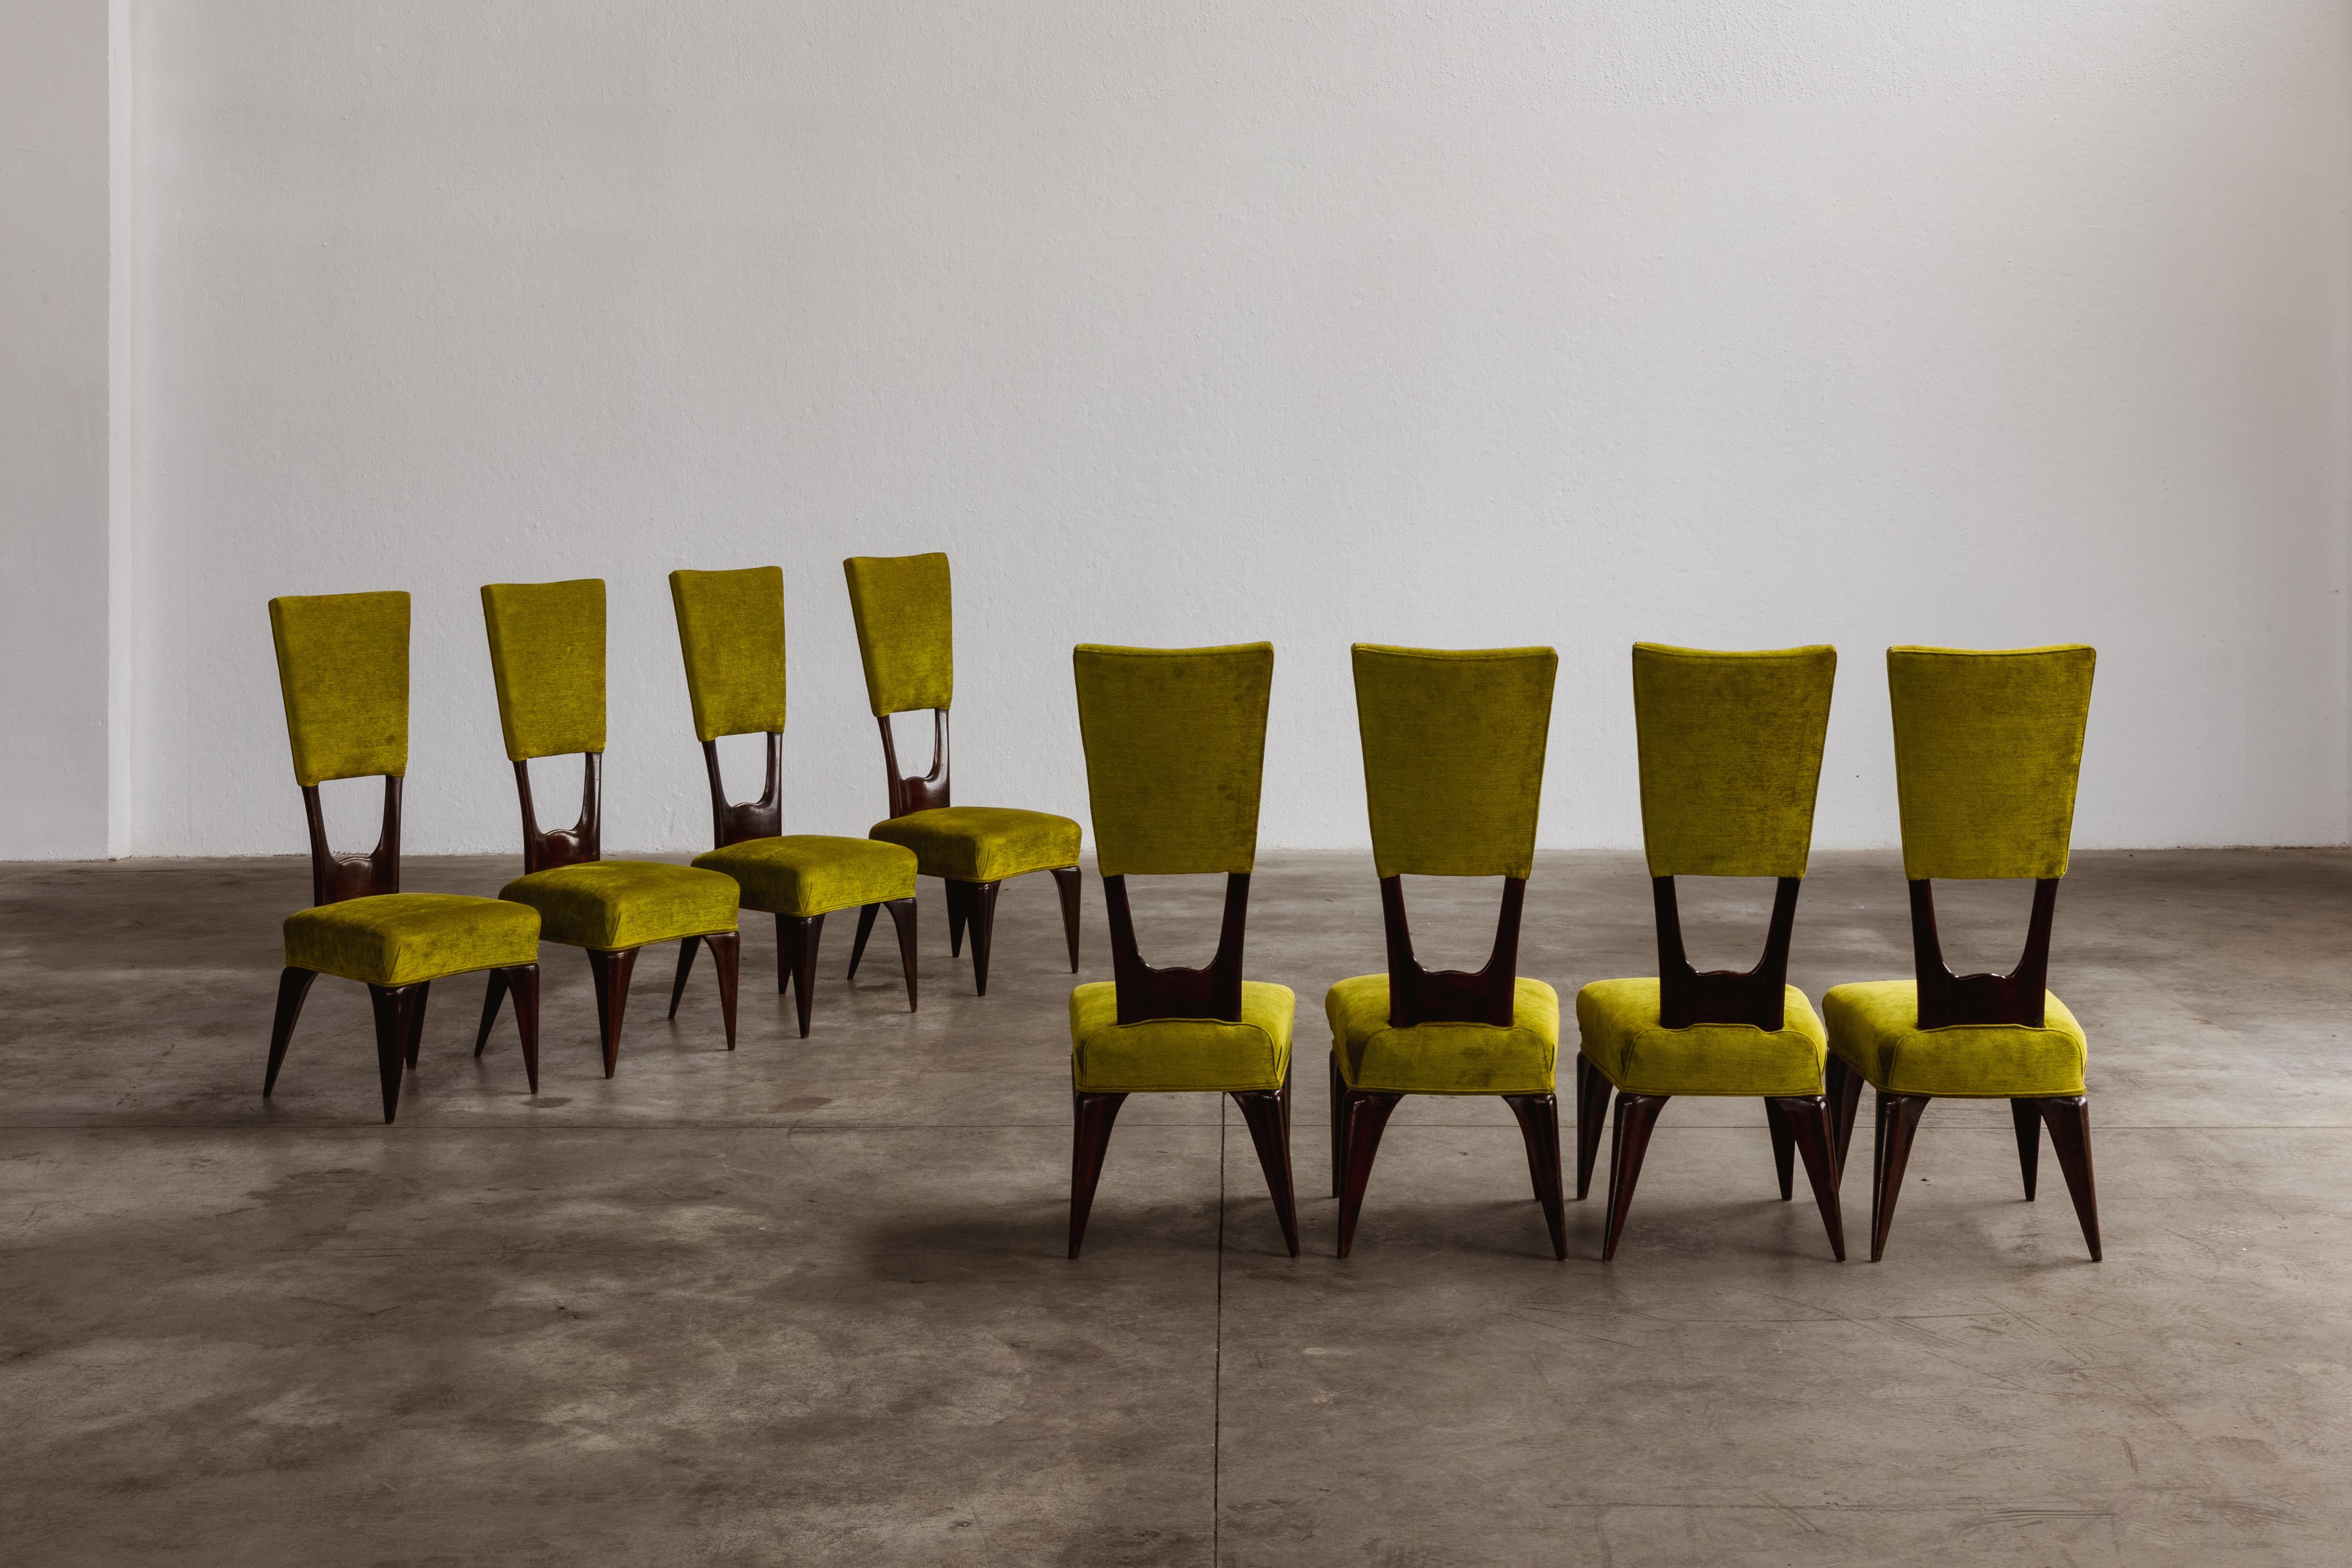 Vittorio Valabrega Esszimmerstühle, Samt und Holz, Italien, 1950er Jahre, Satz von acht.

Diese skulpturalen Stühle erinnern mit ihren eleganten Formen an die Art-Déco-Bewegung. Die Holzstruktur ist in jedem Teil sorgfältig ausgearbeitet. Die